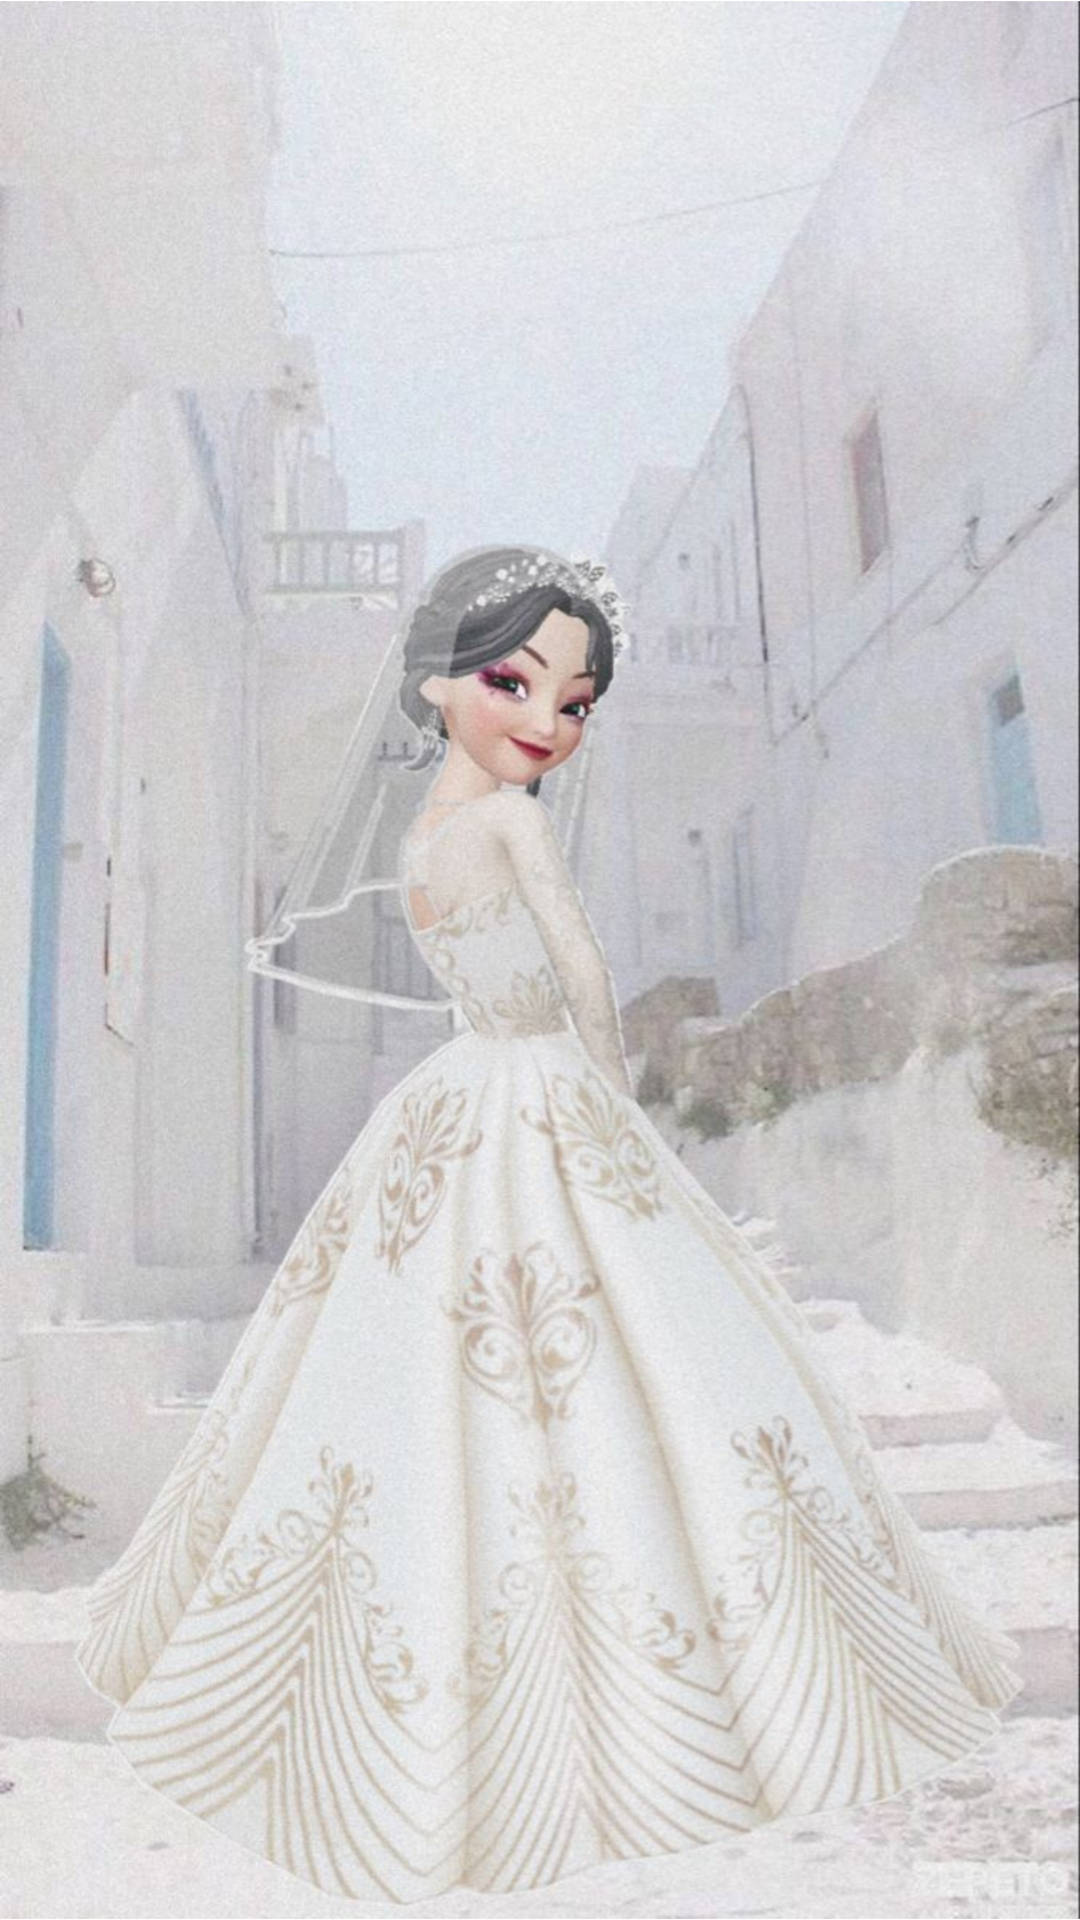 Zepeto Beautiful Bride Picture